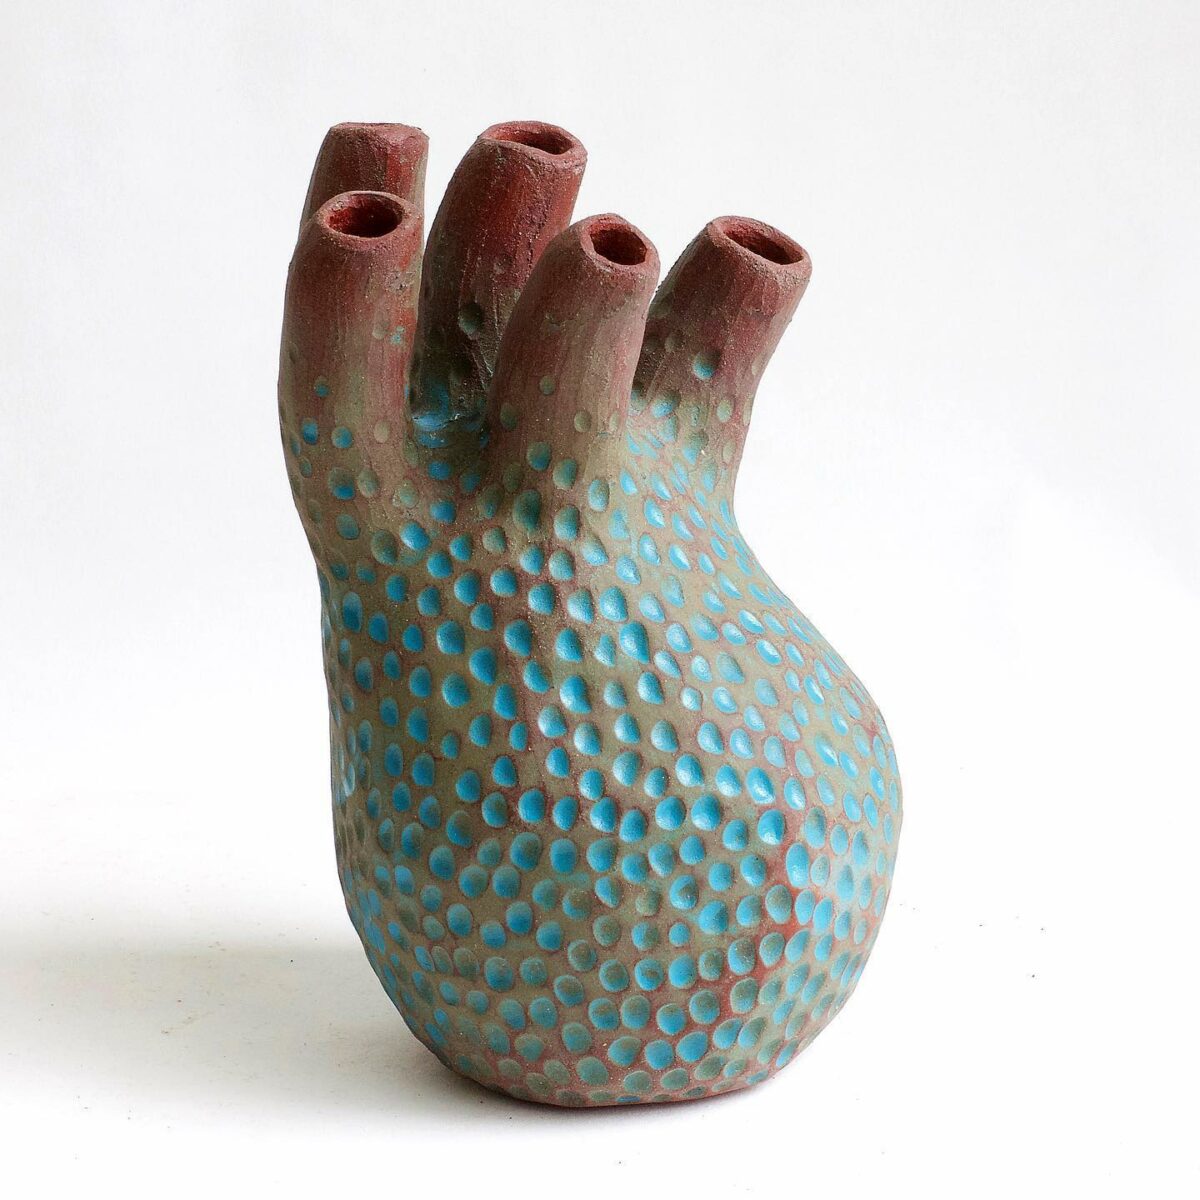 Amorphous Ceramic Vessels By Julie Bergeron (11)